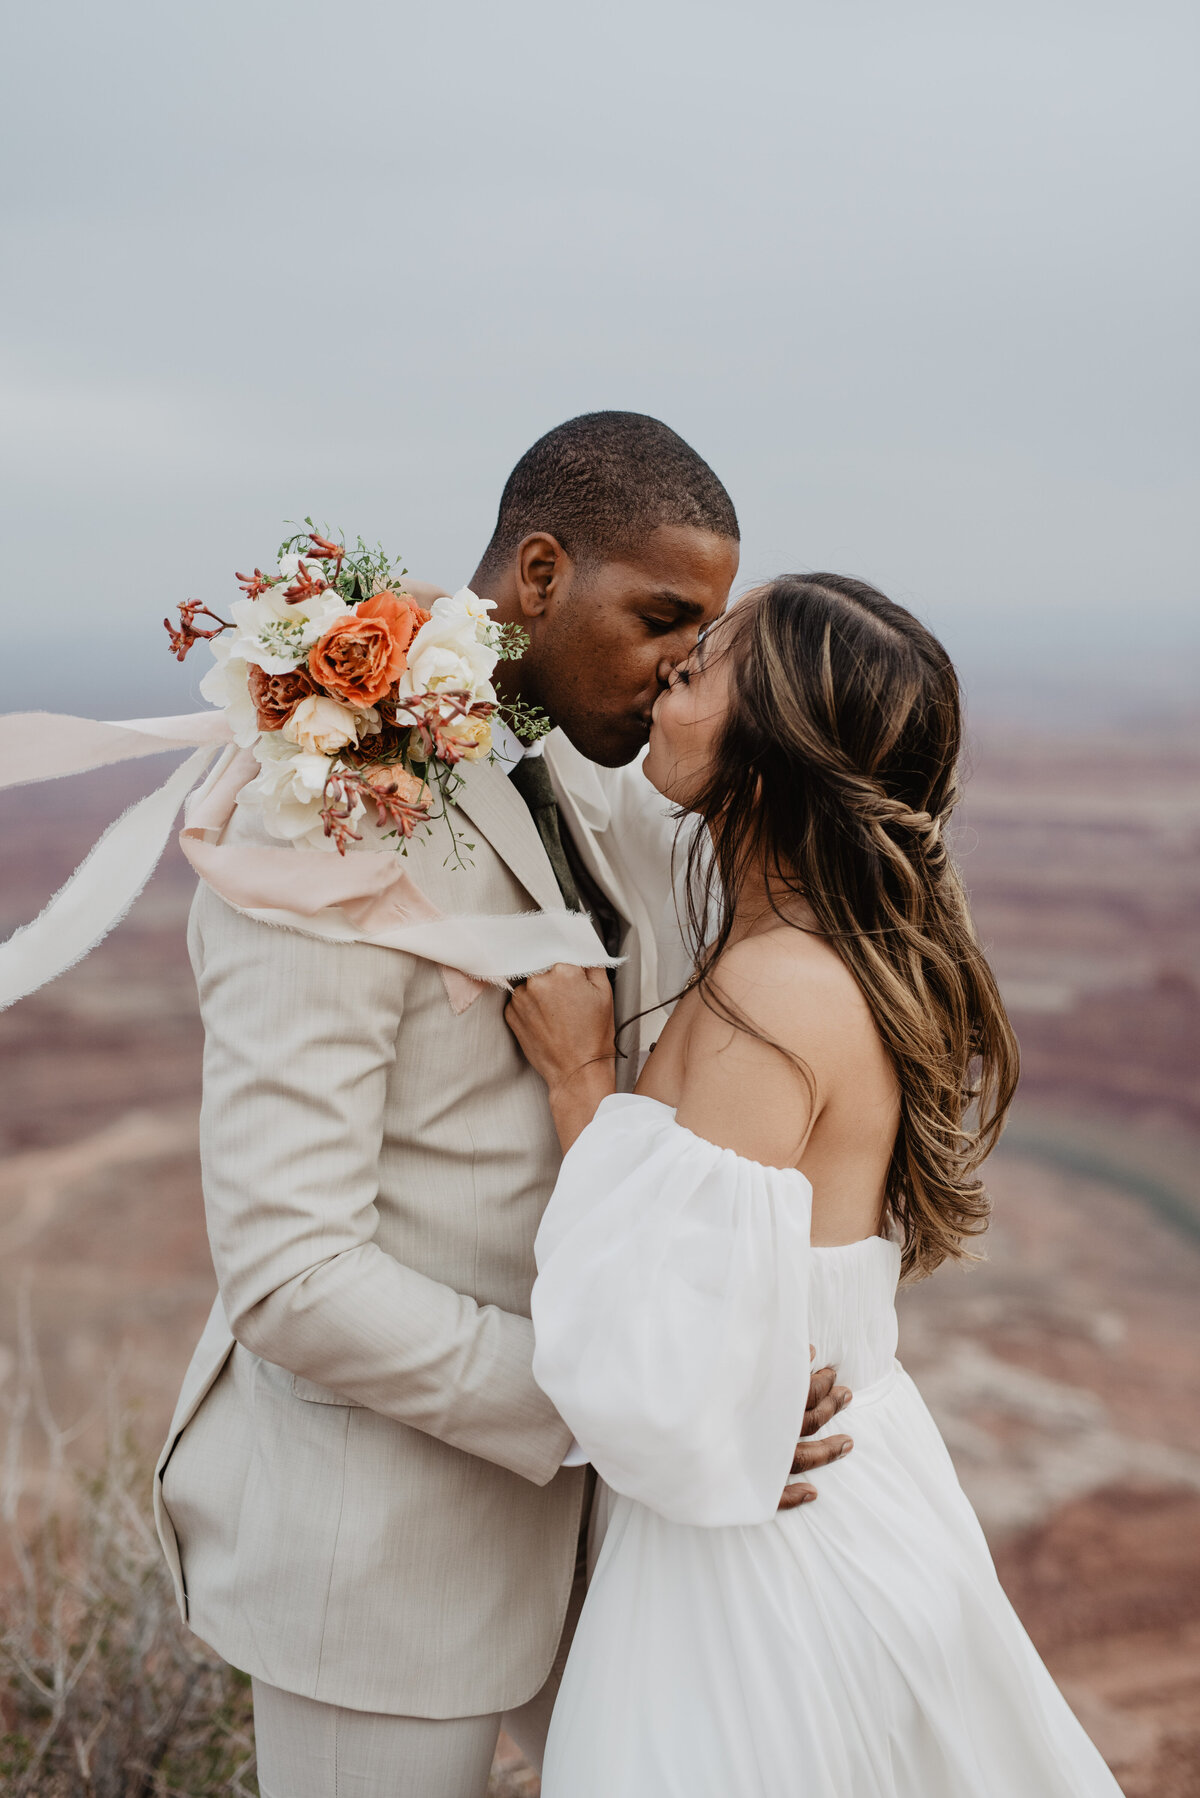 Utah Elopement Photographer captures couple kissing during bridal portraits